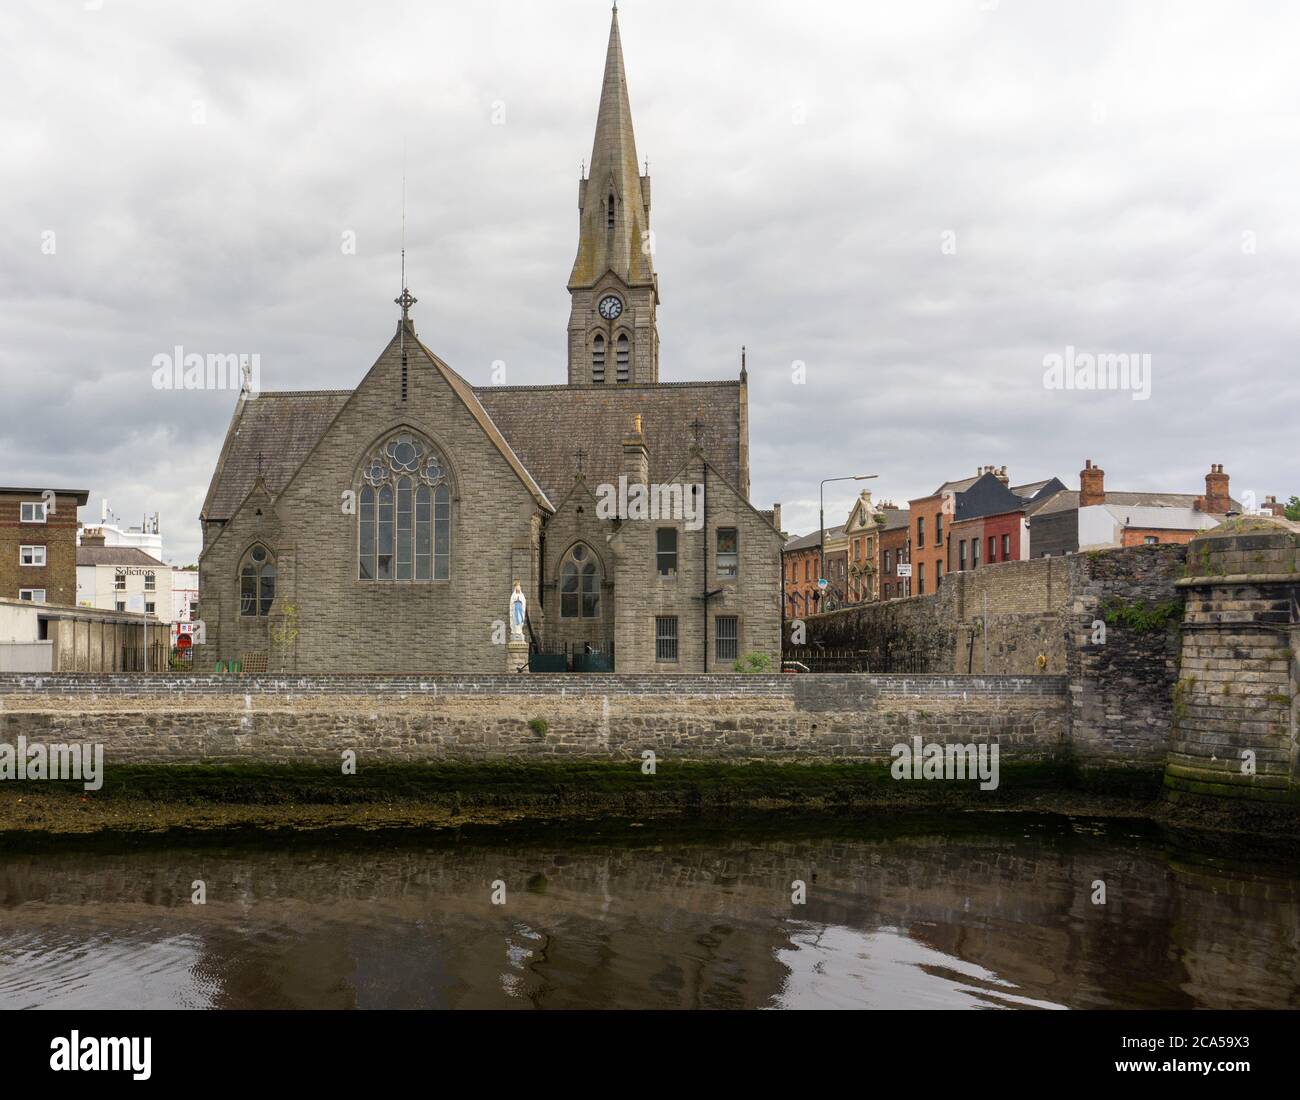 Eglise catholique romaine St Patrick, le long des rives de la rivière Ddder, à Ringsend, Dublin, Irlande. Il a été ouvert en 1859 par l'archevêque Cullen. Banque D'Images